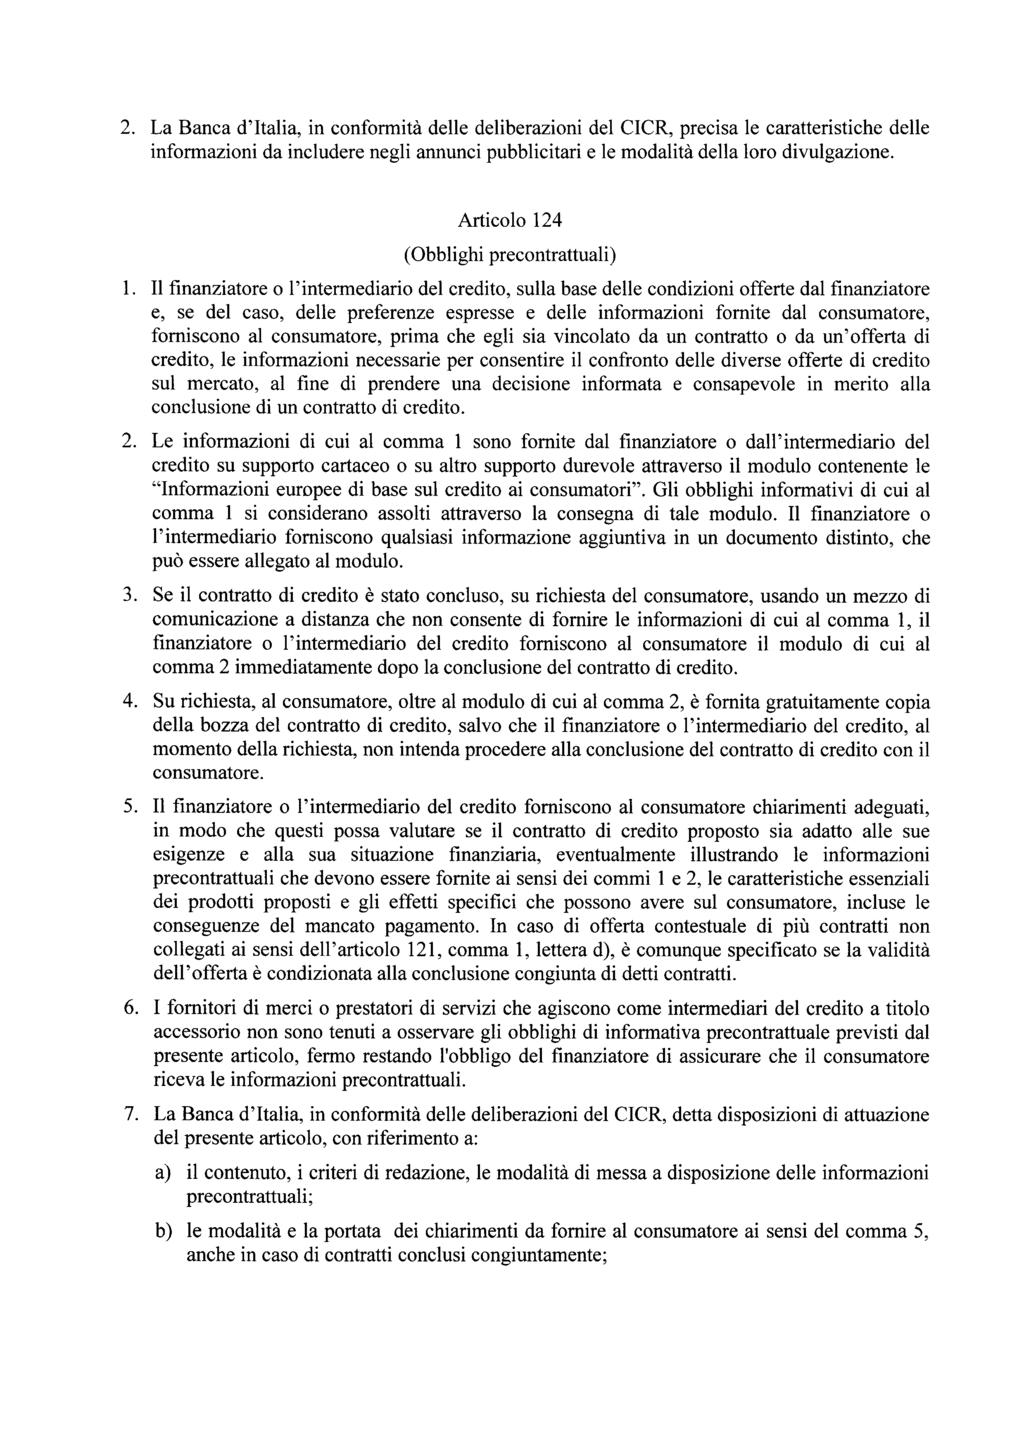 2. La Banca d'italia, in conformità delle deliberazioni del CICR, precisa le caratteristiche delle informazioni da includere negli annunci pubblicitari e le modalità della loro divulgazione.